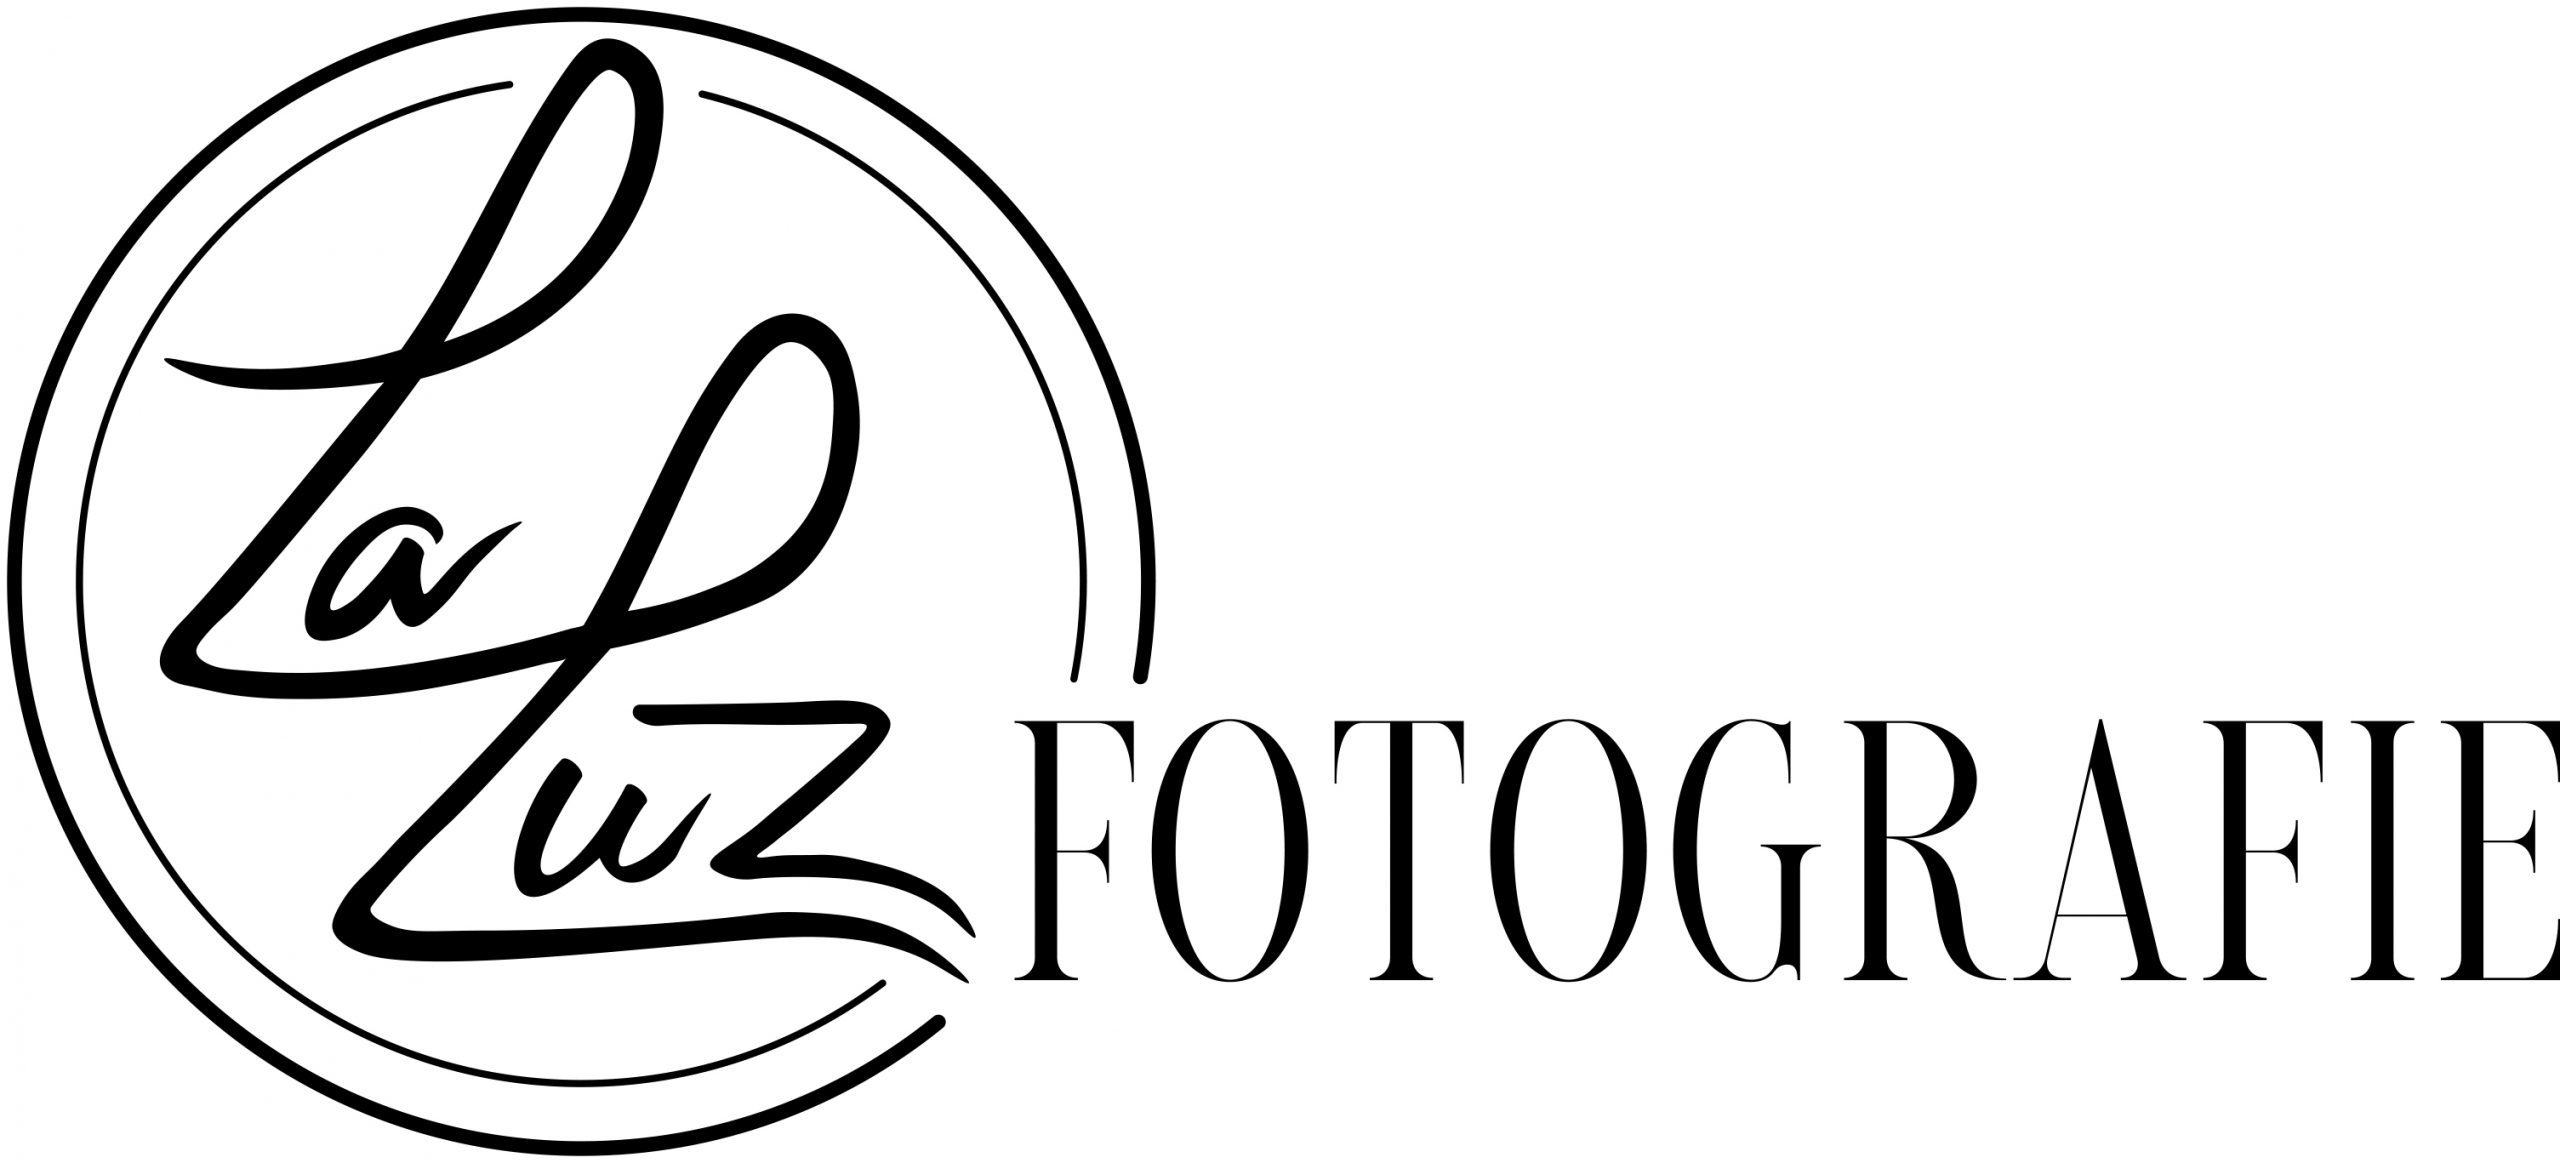 La Luz Fotografie logo